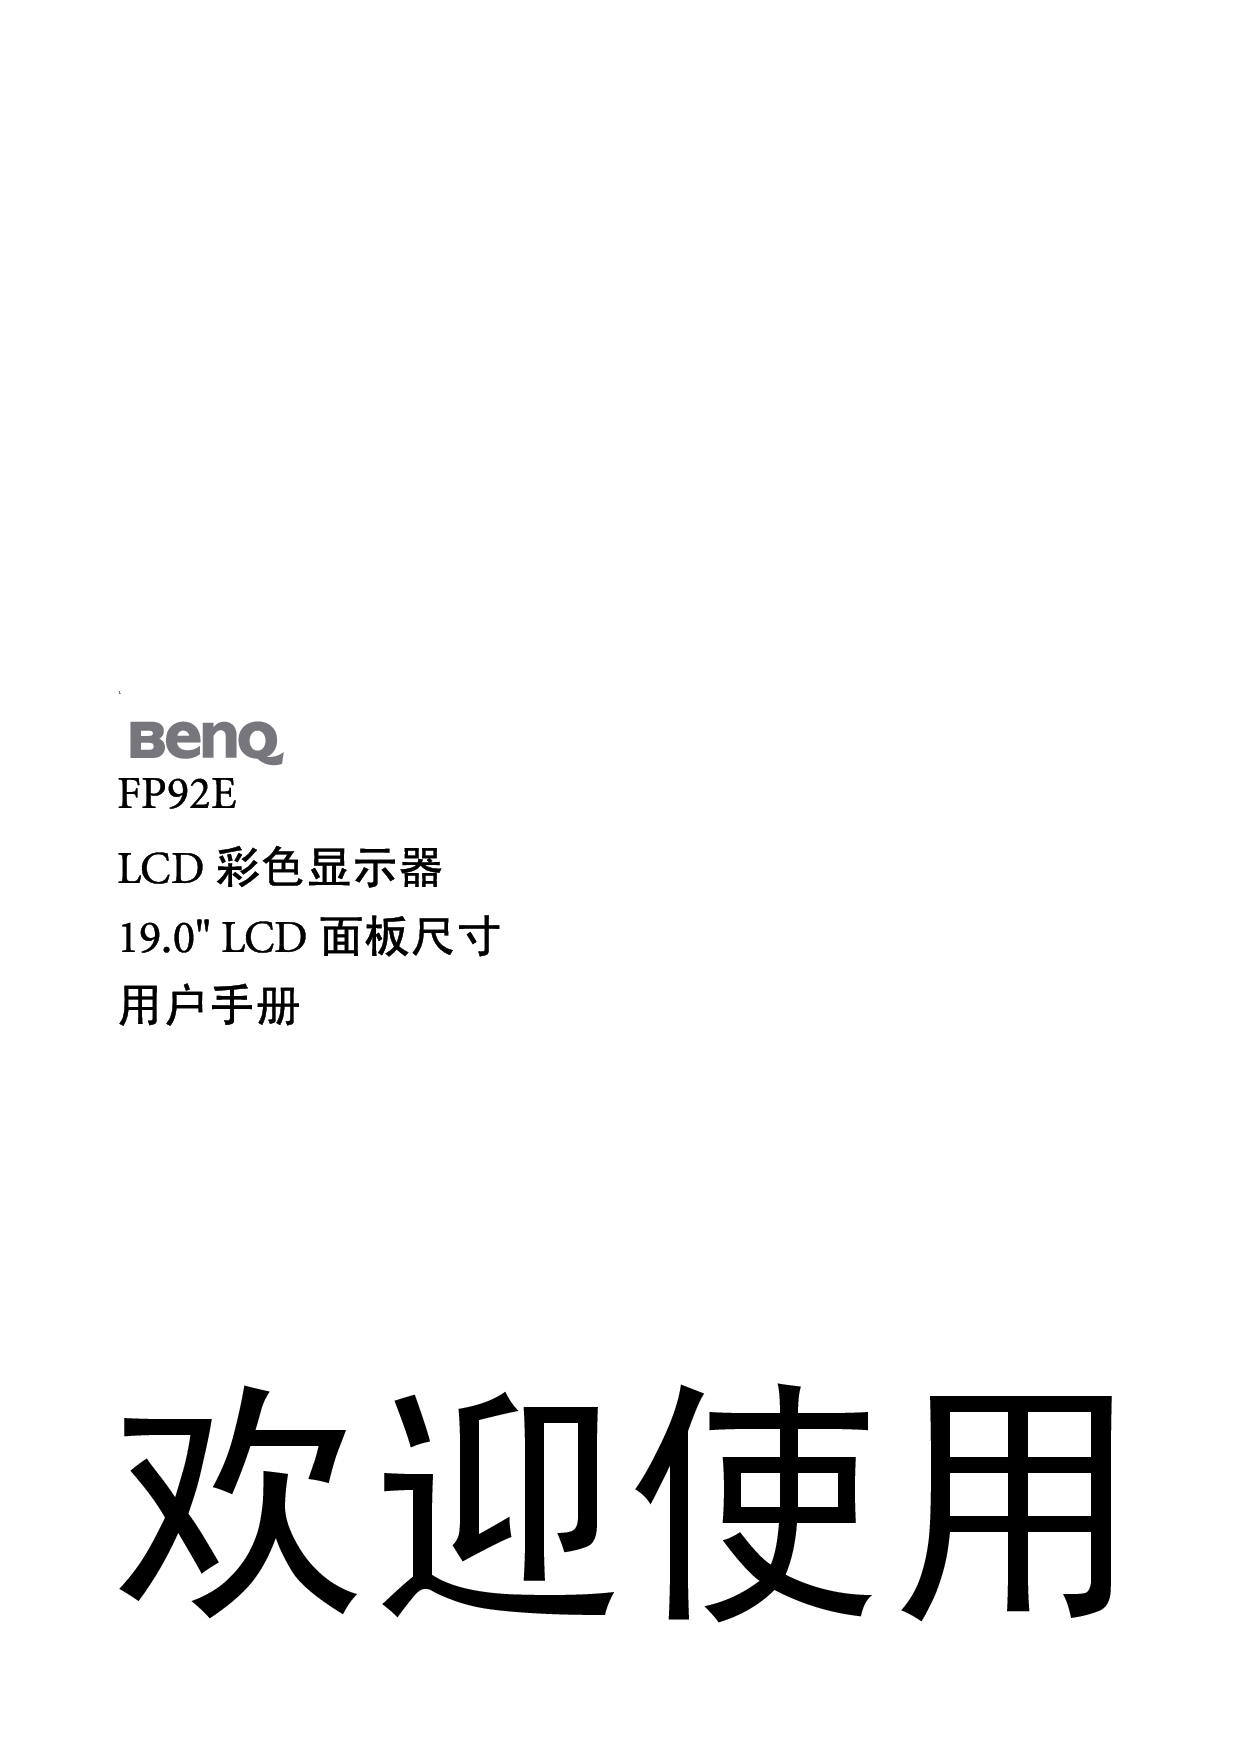 明基 Benq FP92E 使用手册 封面